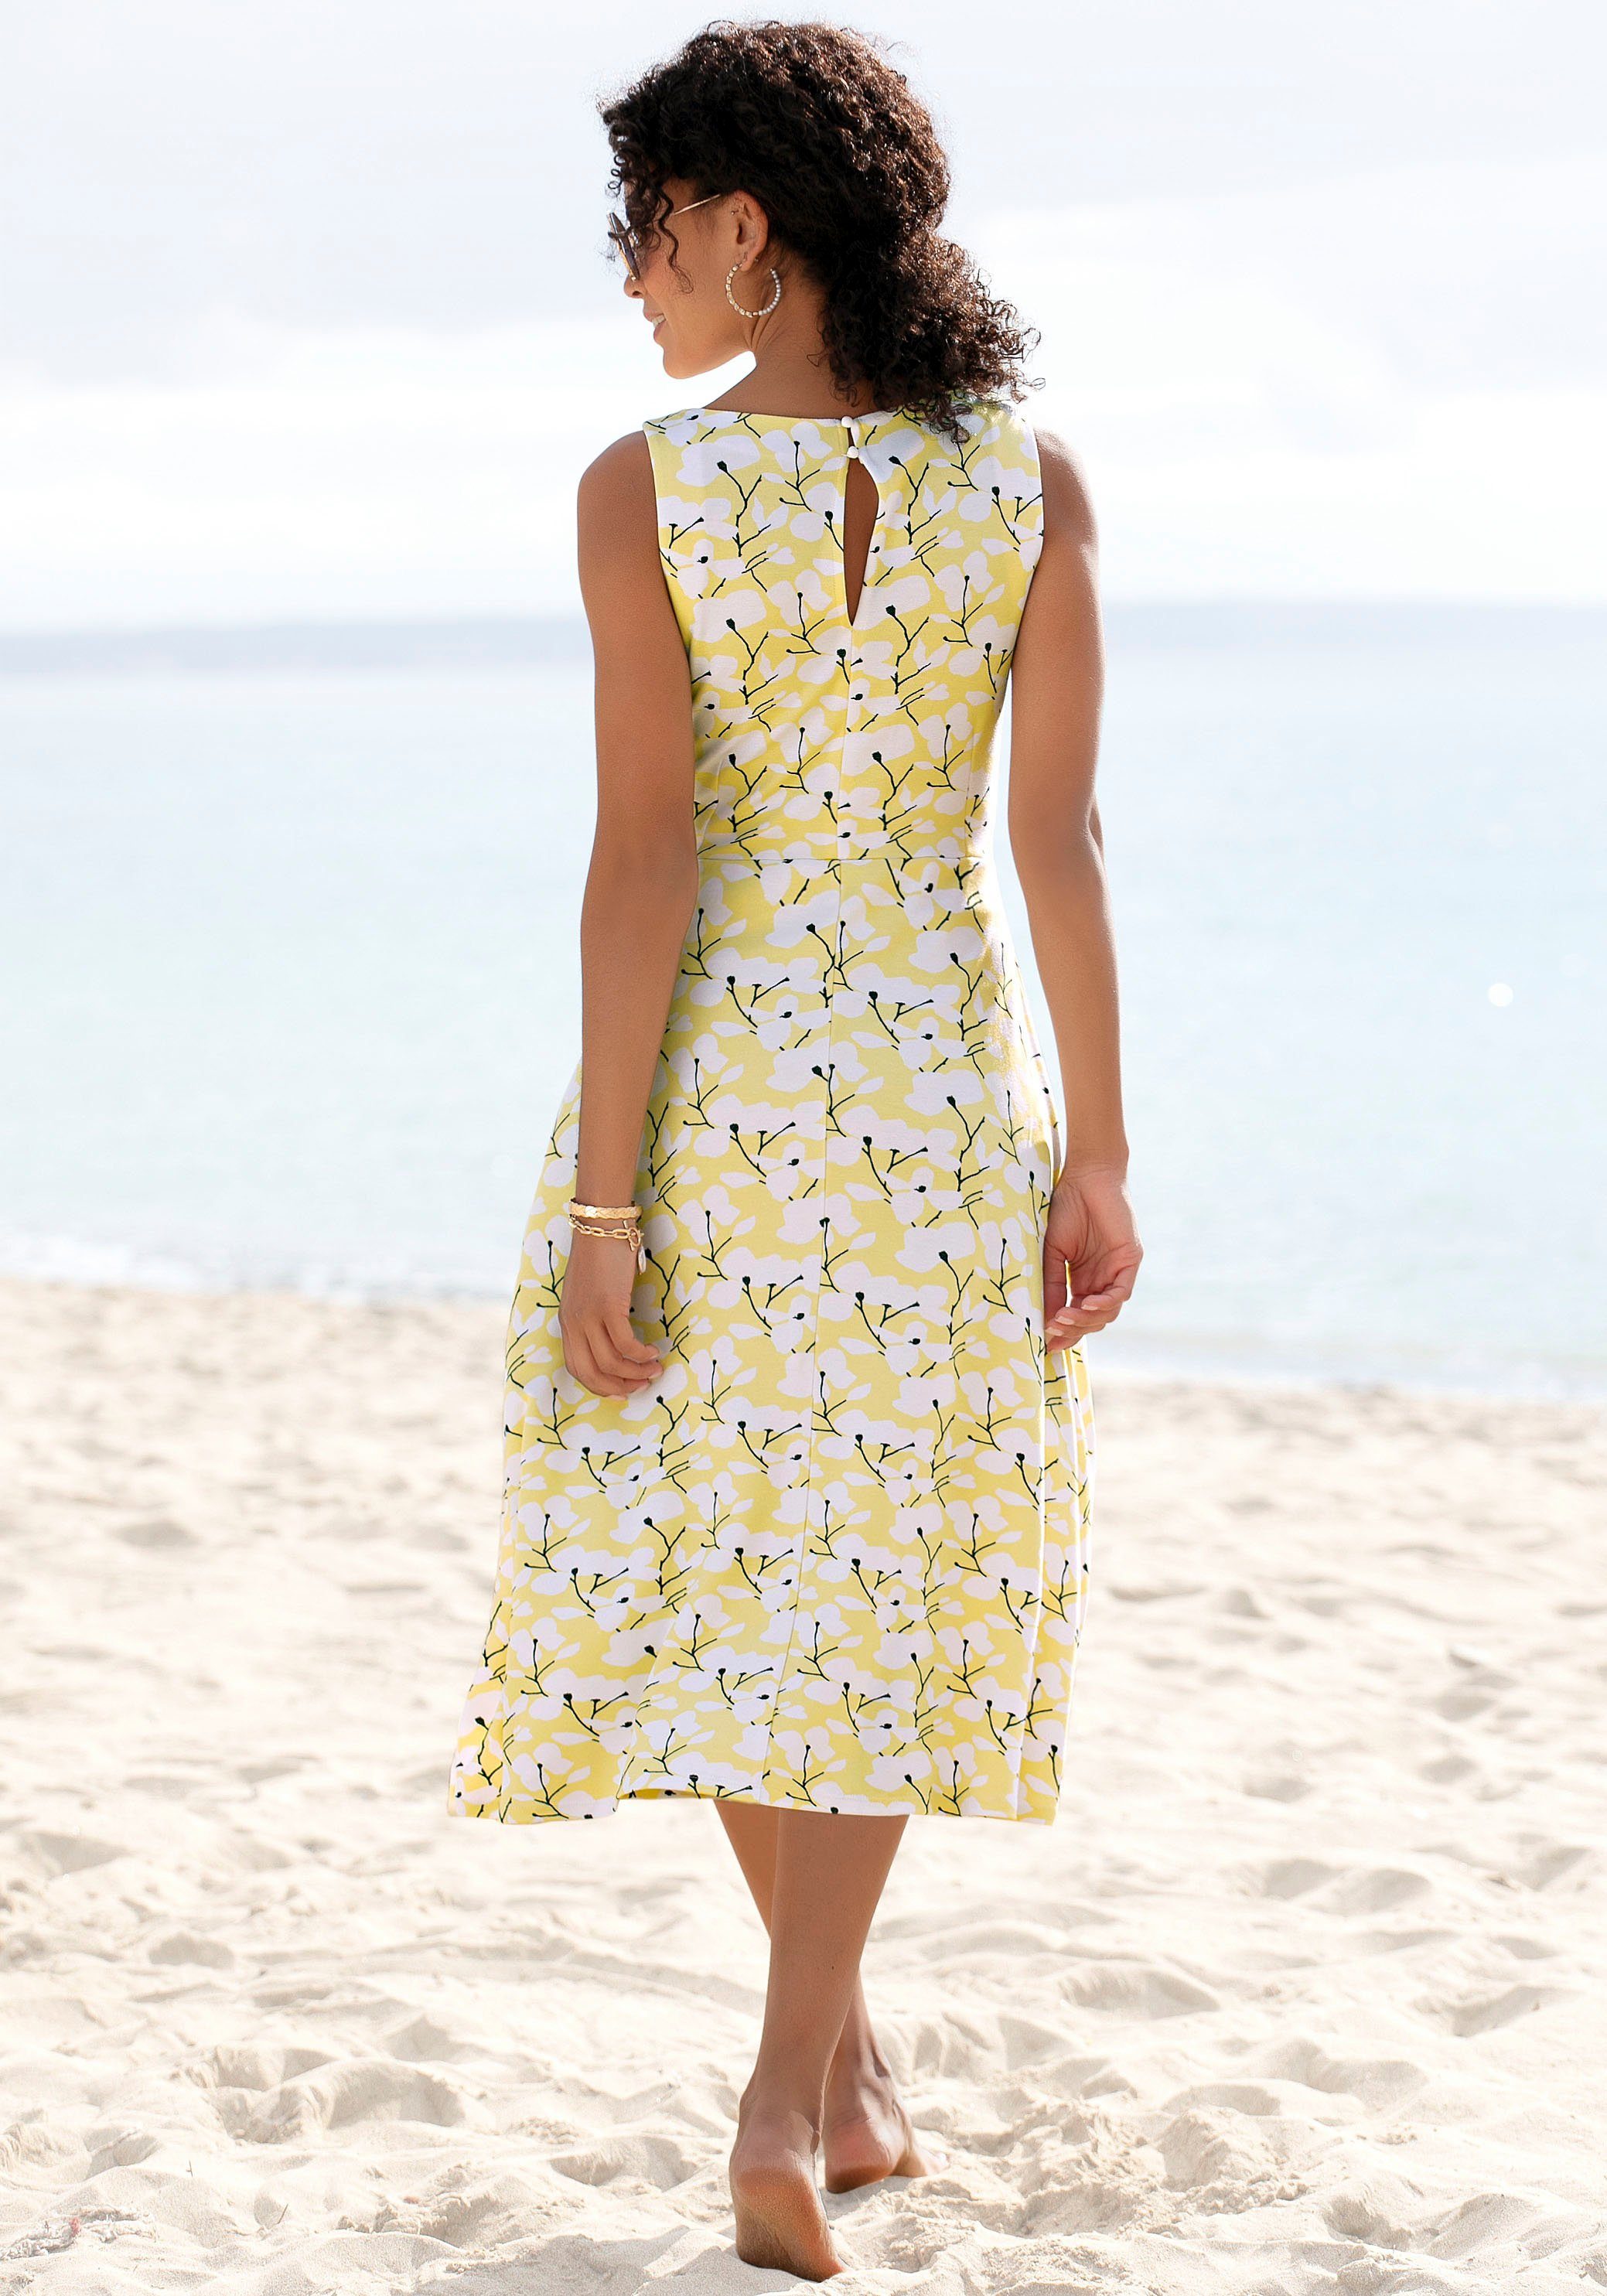 Beachtime Sommerkleid mit gelb-creme-bedruckt Strandmode, Strandbekleidung Blumendruck